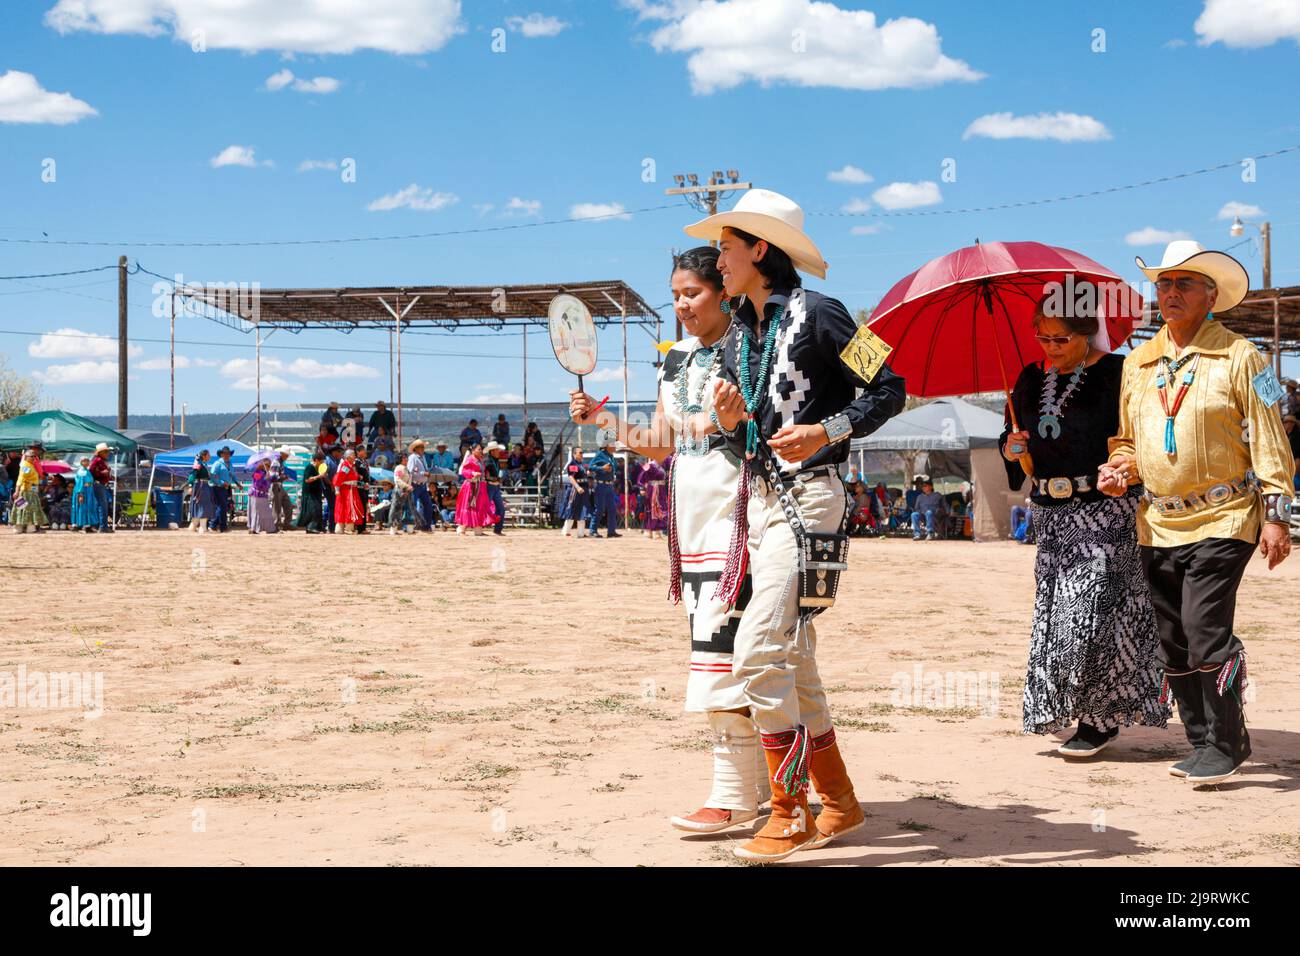 Window Rock, Arizona, États-Unis. Foire de la nation Navajo. Les gens dans les vêtements traditionnels. (Usage éditorial uniquement) Banque D'Images